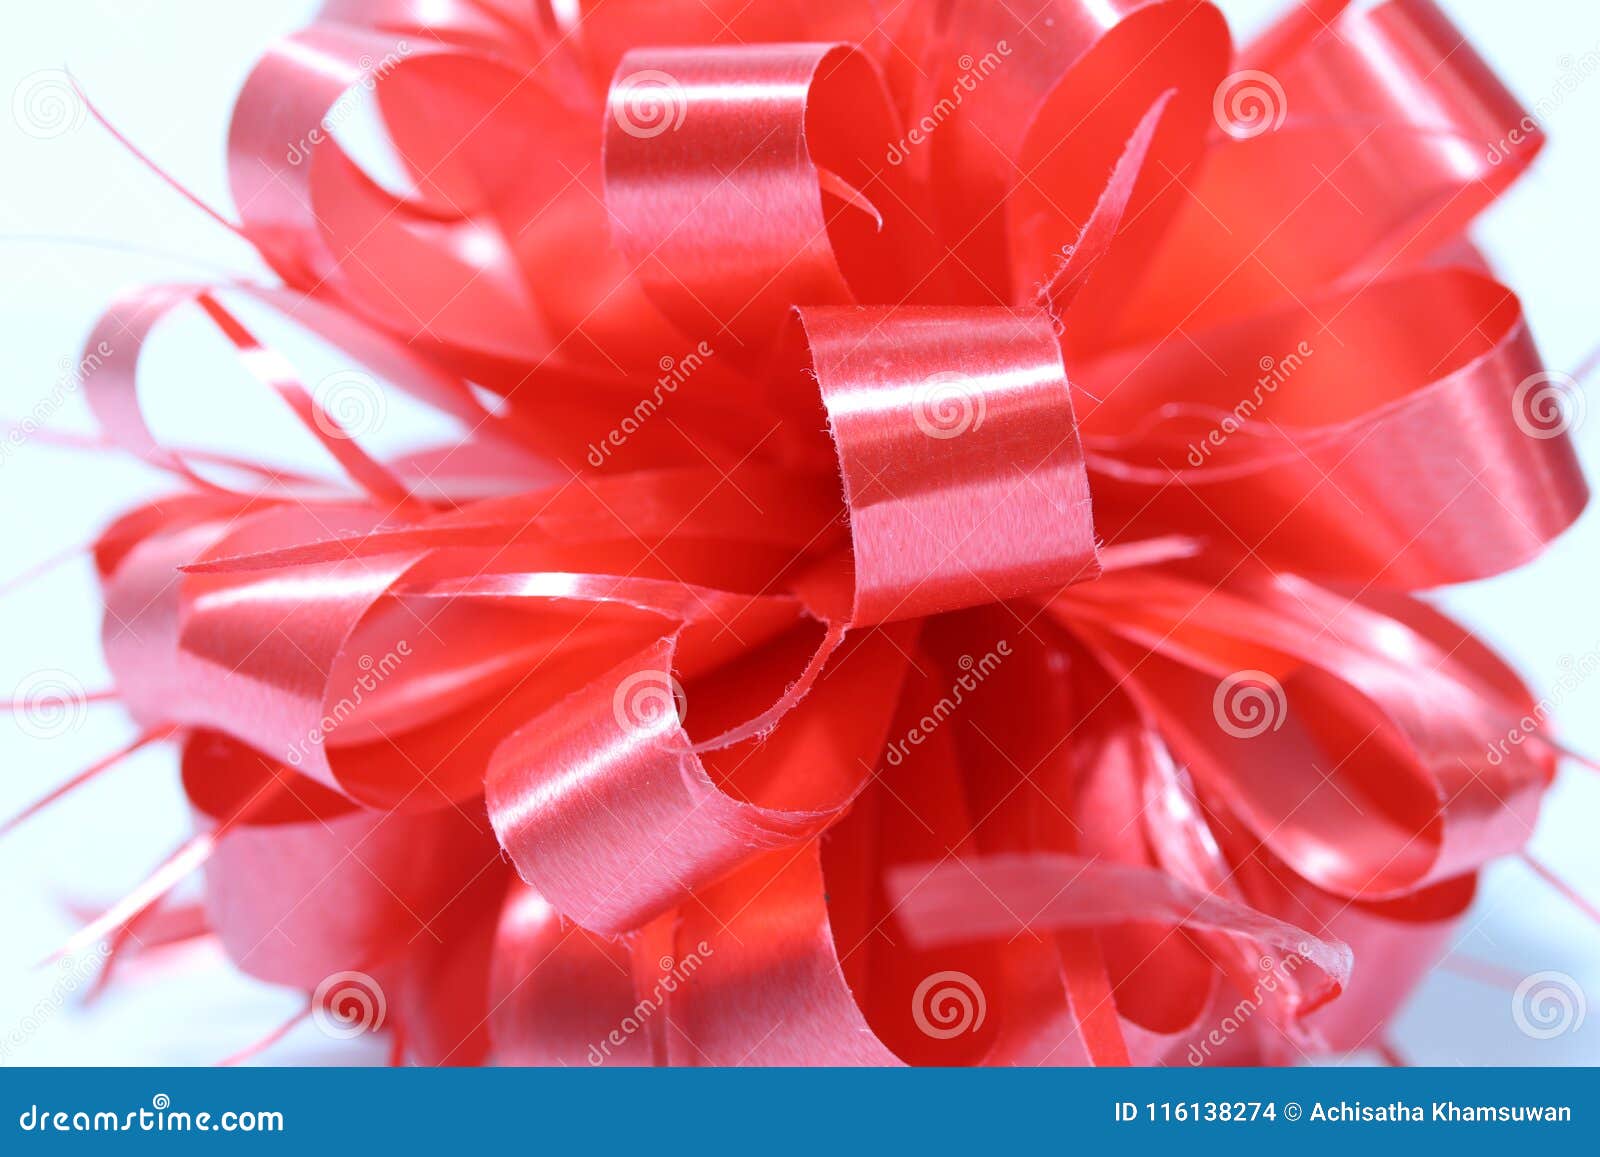 Cinta roja del Año Nuevo de la esfera en el fondo blanco la cinta es una tira larga, estrecha, usada especialmente para atar algo o para la decoración